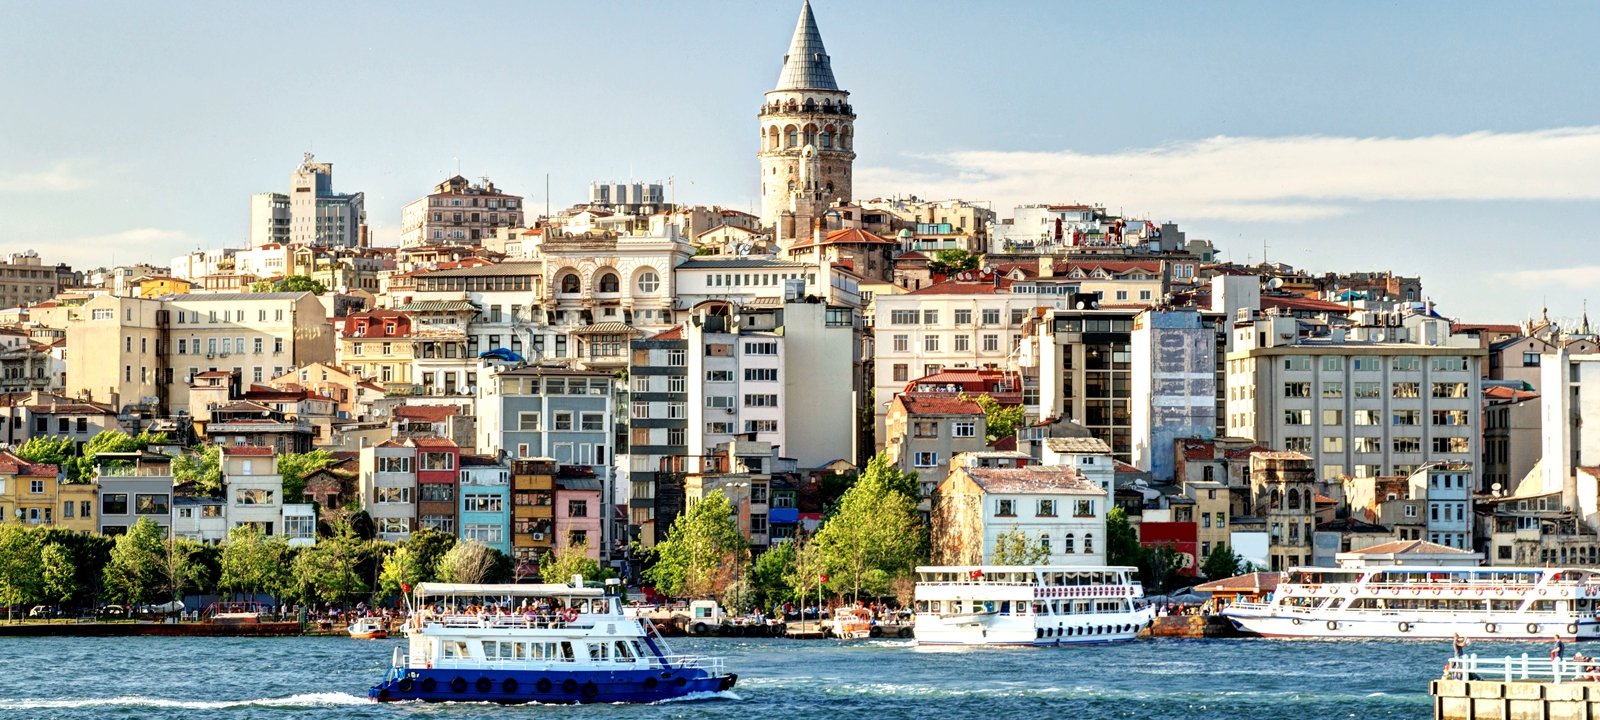 Как отправиться в круиз по Босфору в Стамбуле